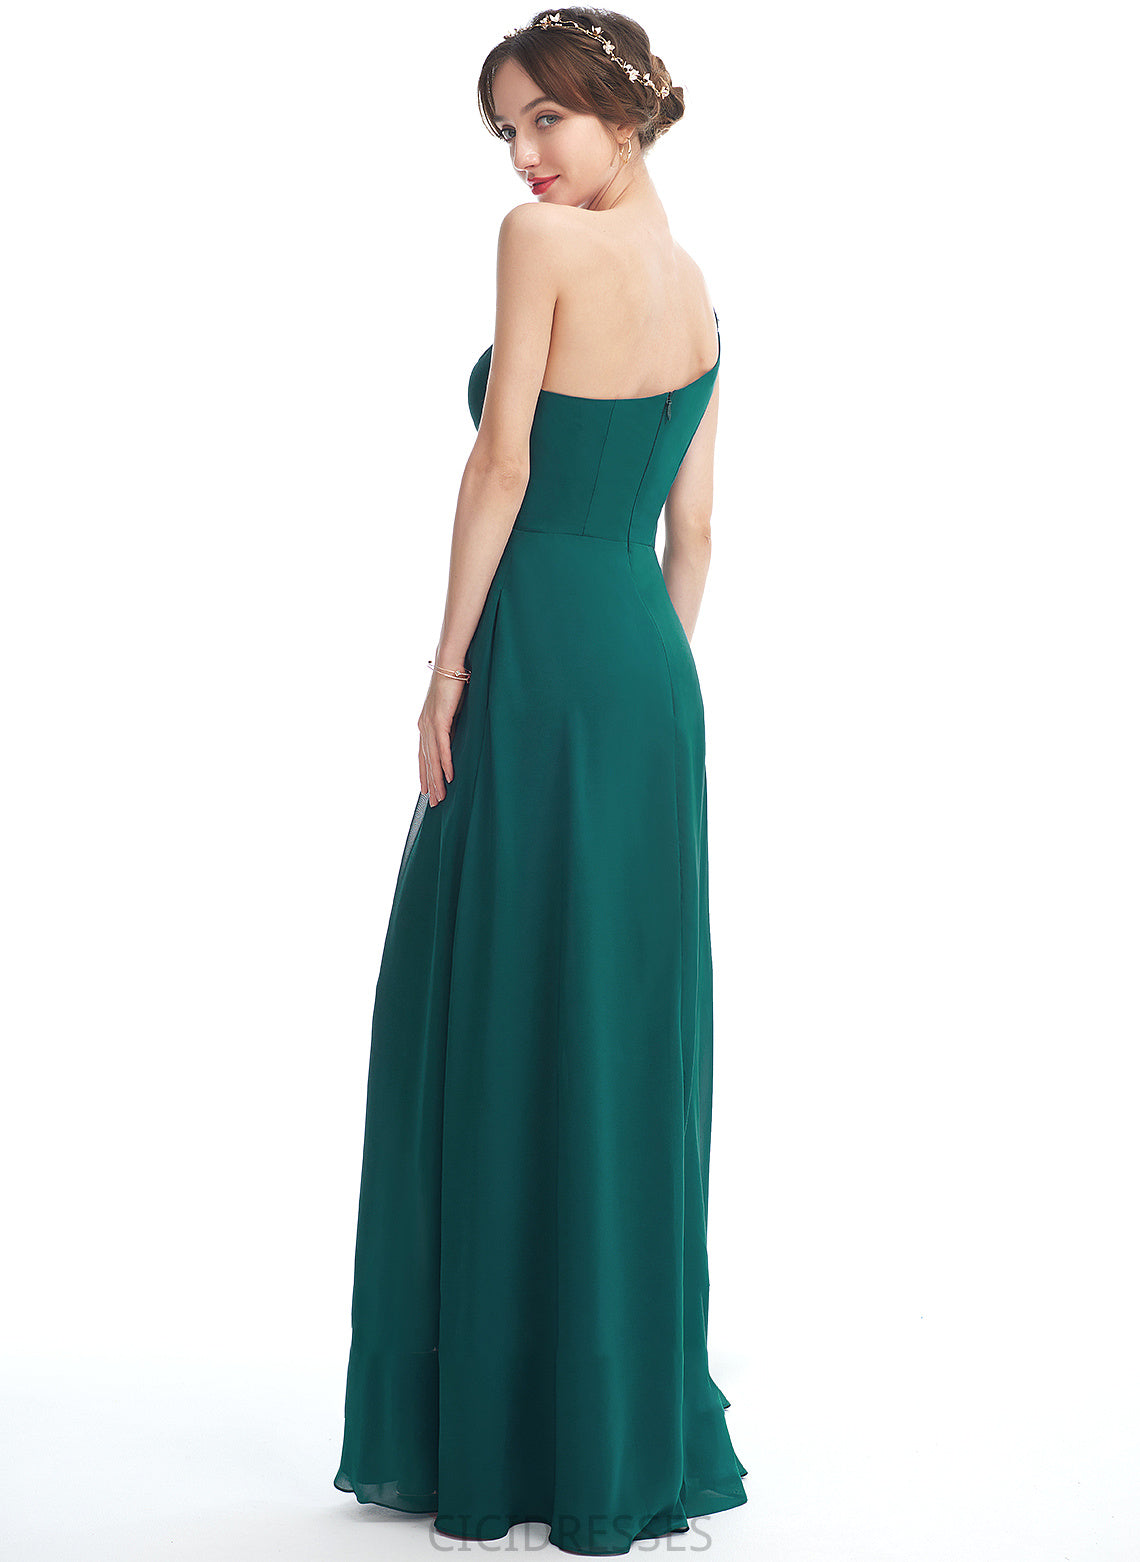 Silhouette Pockets Floor-Length Length SplitFront A-Line One-Shoulder Neckline Fabric Embellishment Hanna V-Neck Bridesmaid Dresses